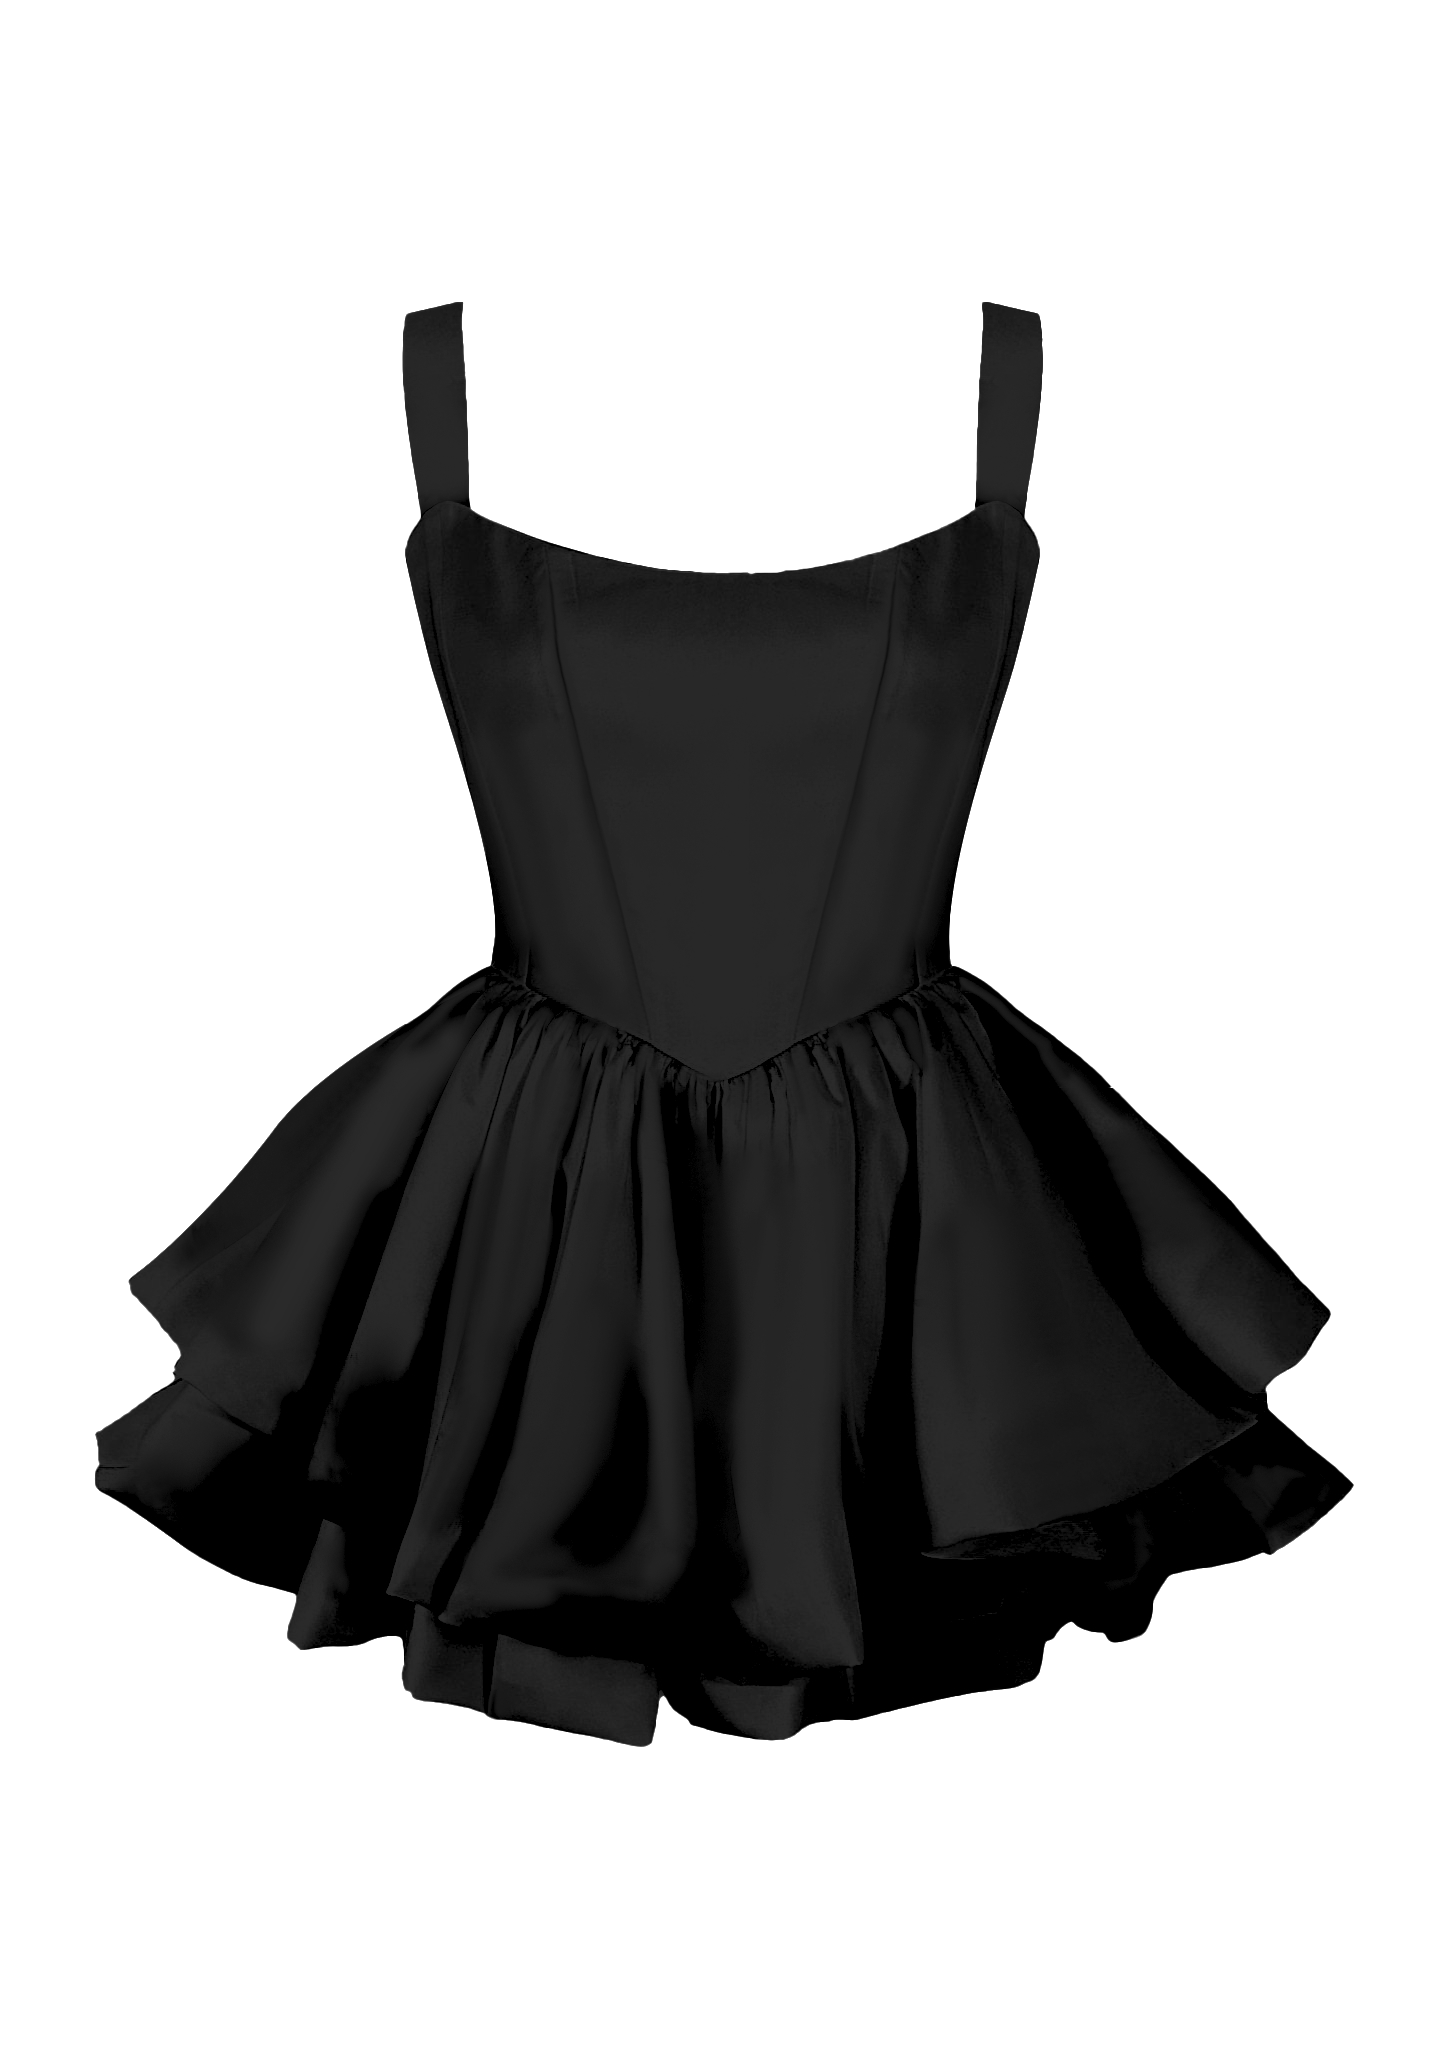 Gigii's Este Dress In Black